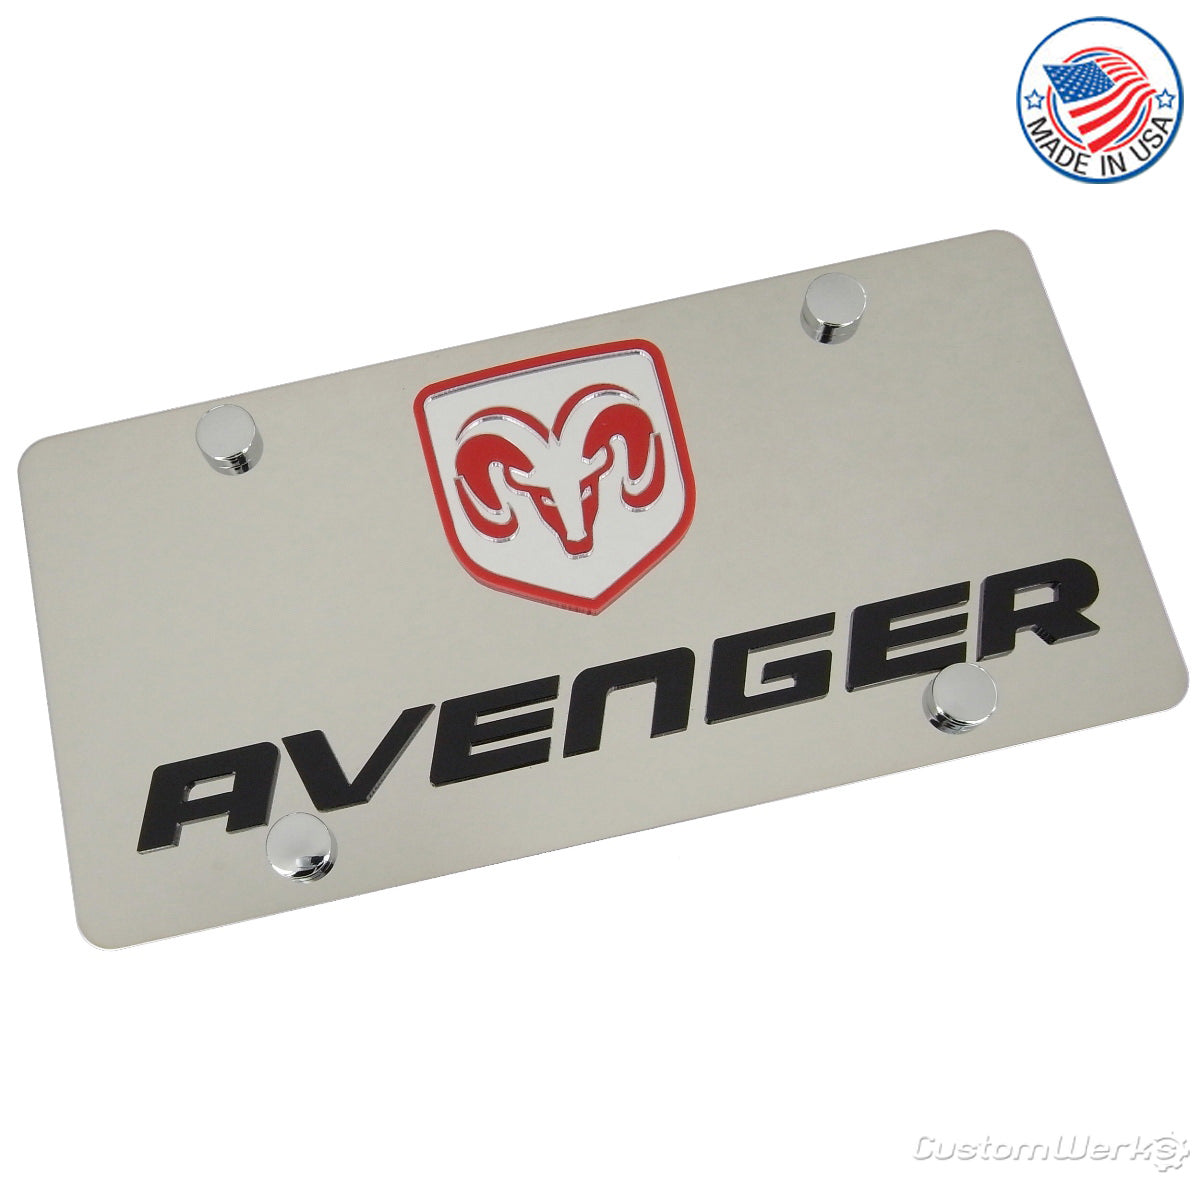 Dodge Avenger License Plate